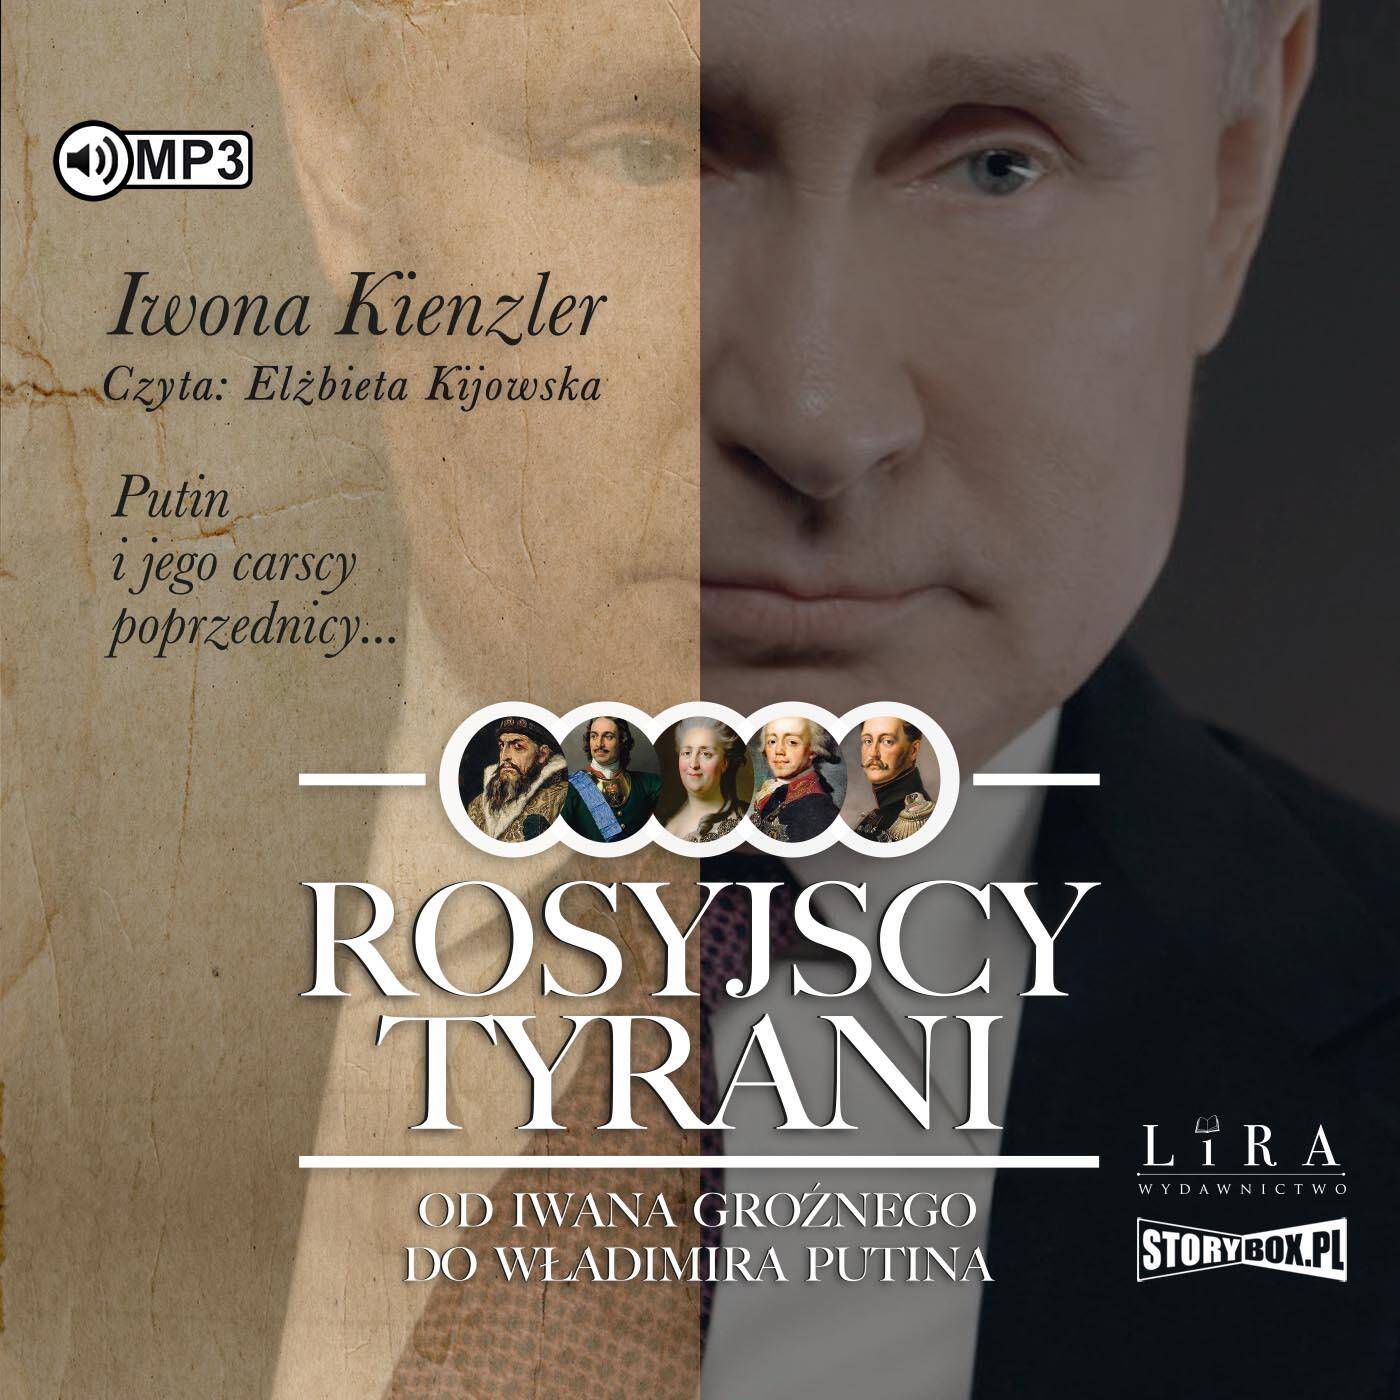 CD MP3 Rosyjscy tyrani. Od Iwana Groźnego do Władimira Putina